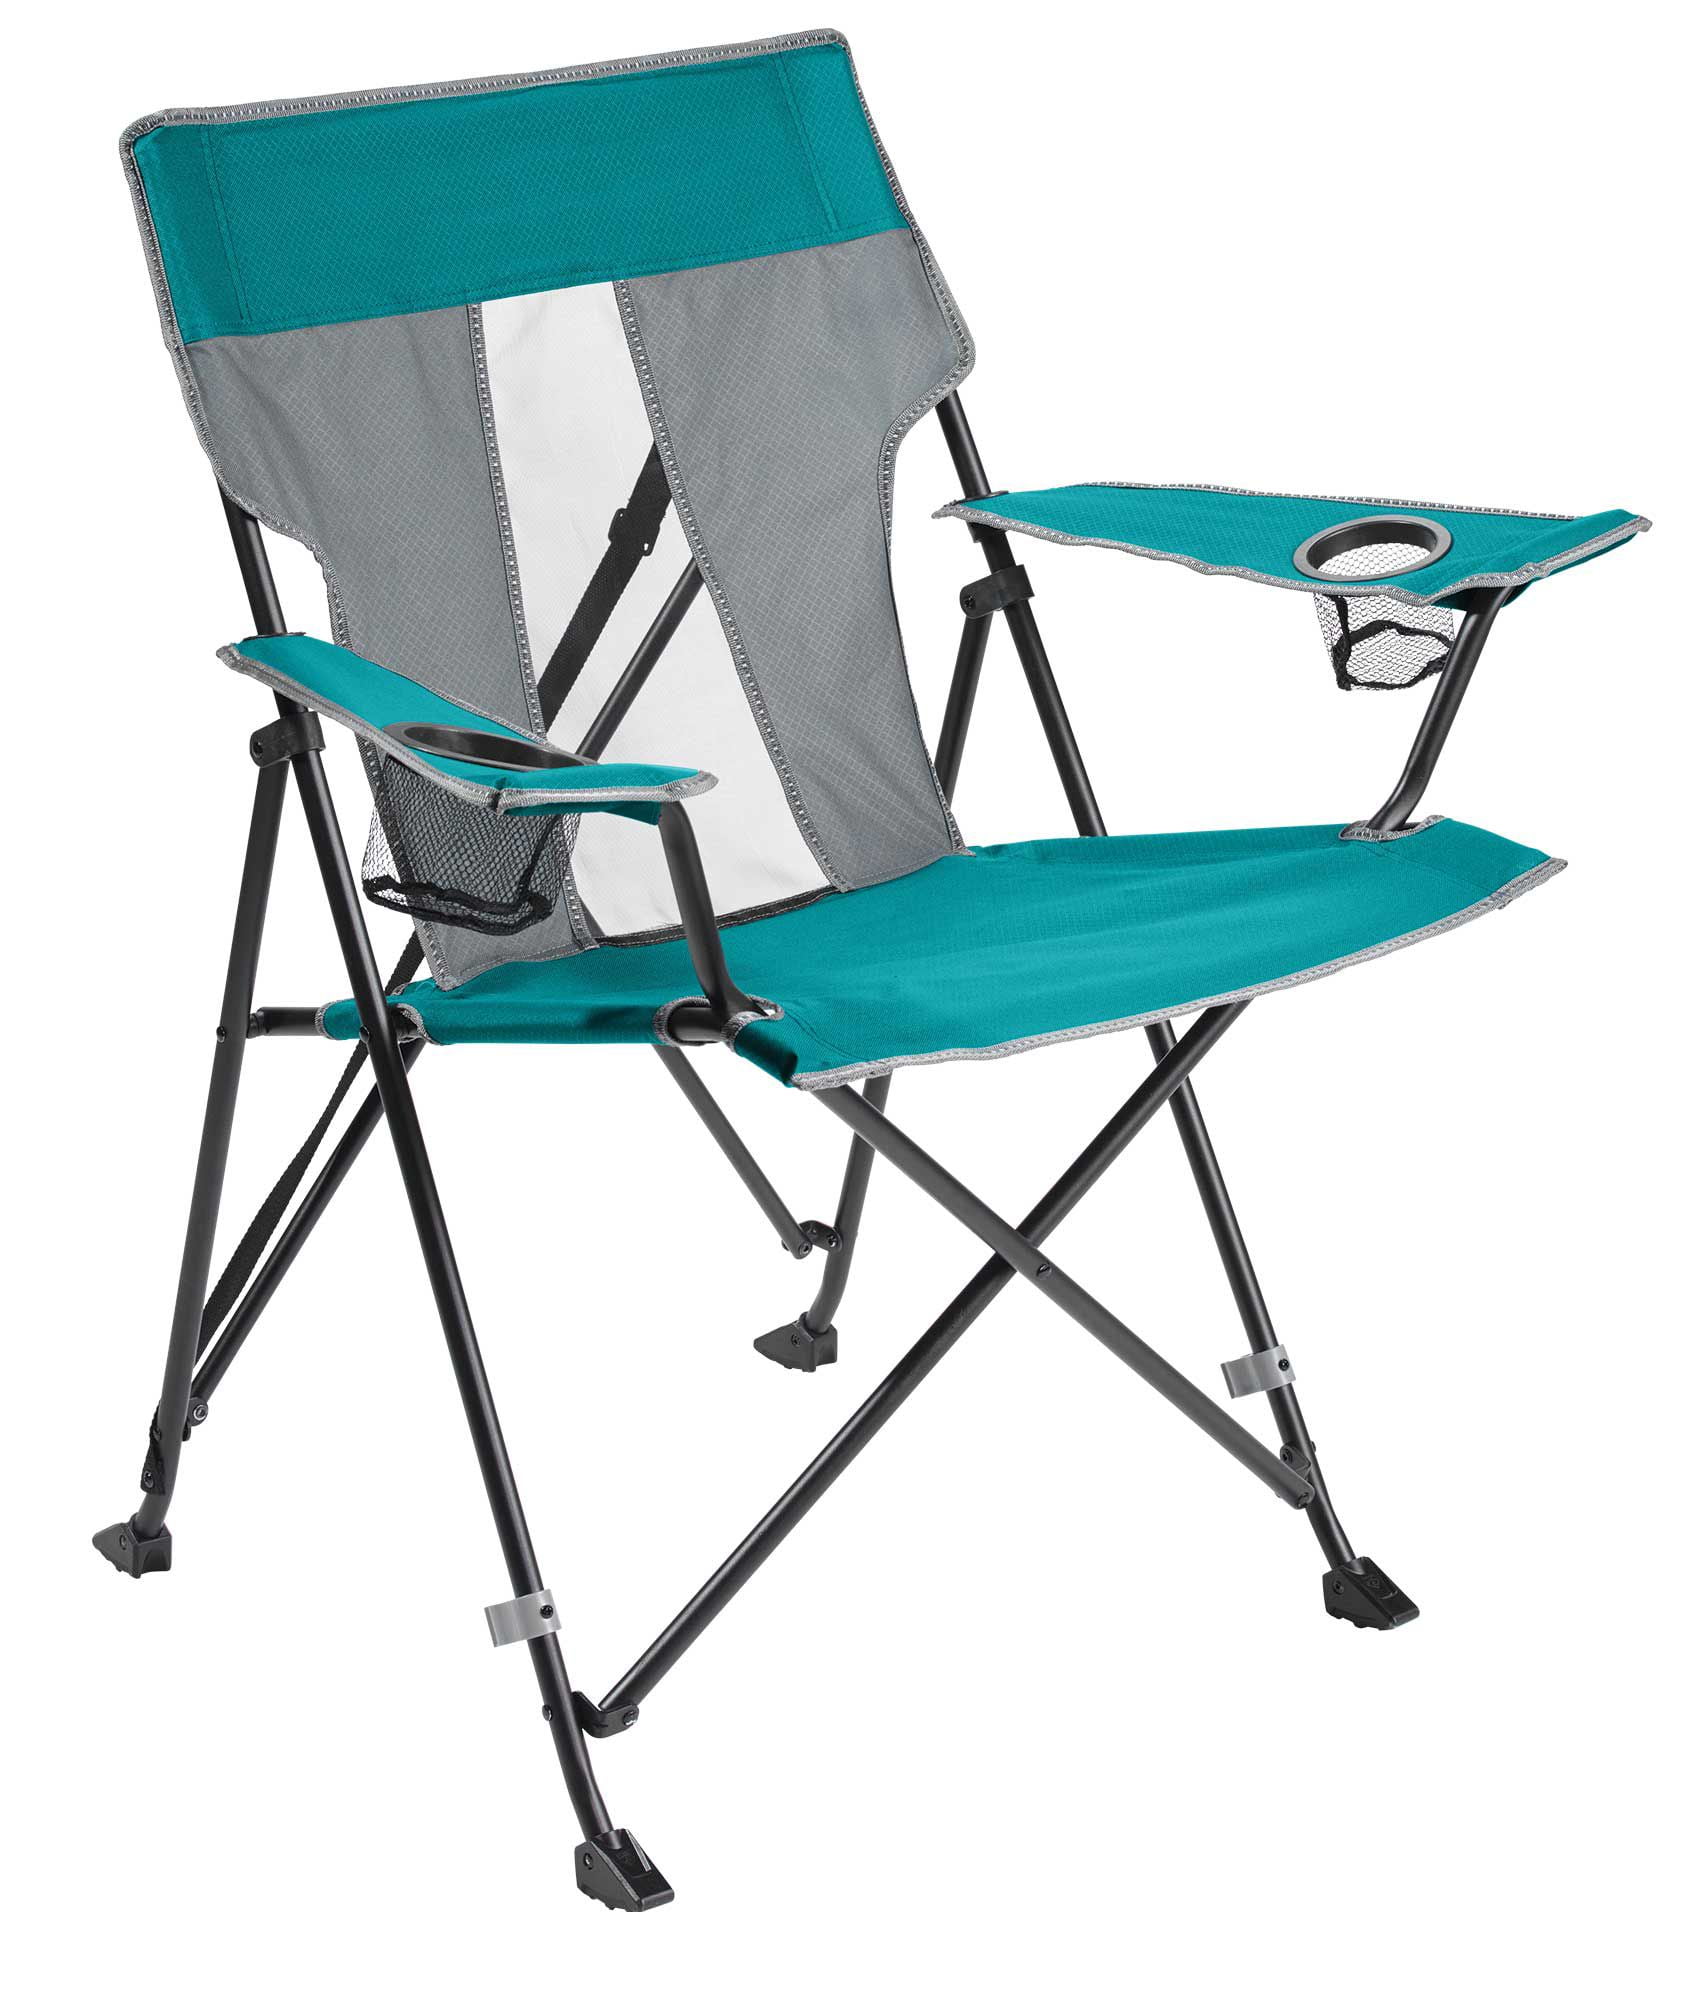 Quest Folding Quad Chair - Walmart.com - Walmart.com